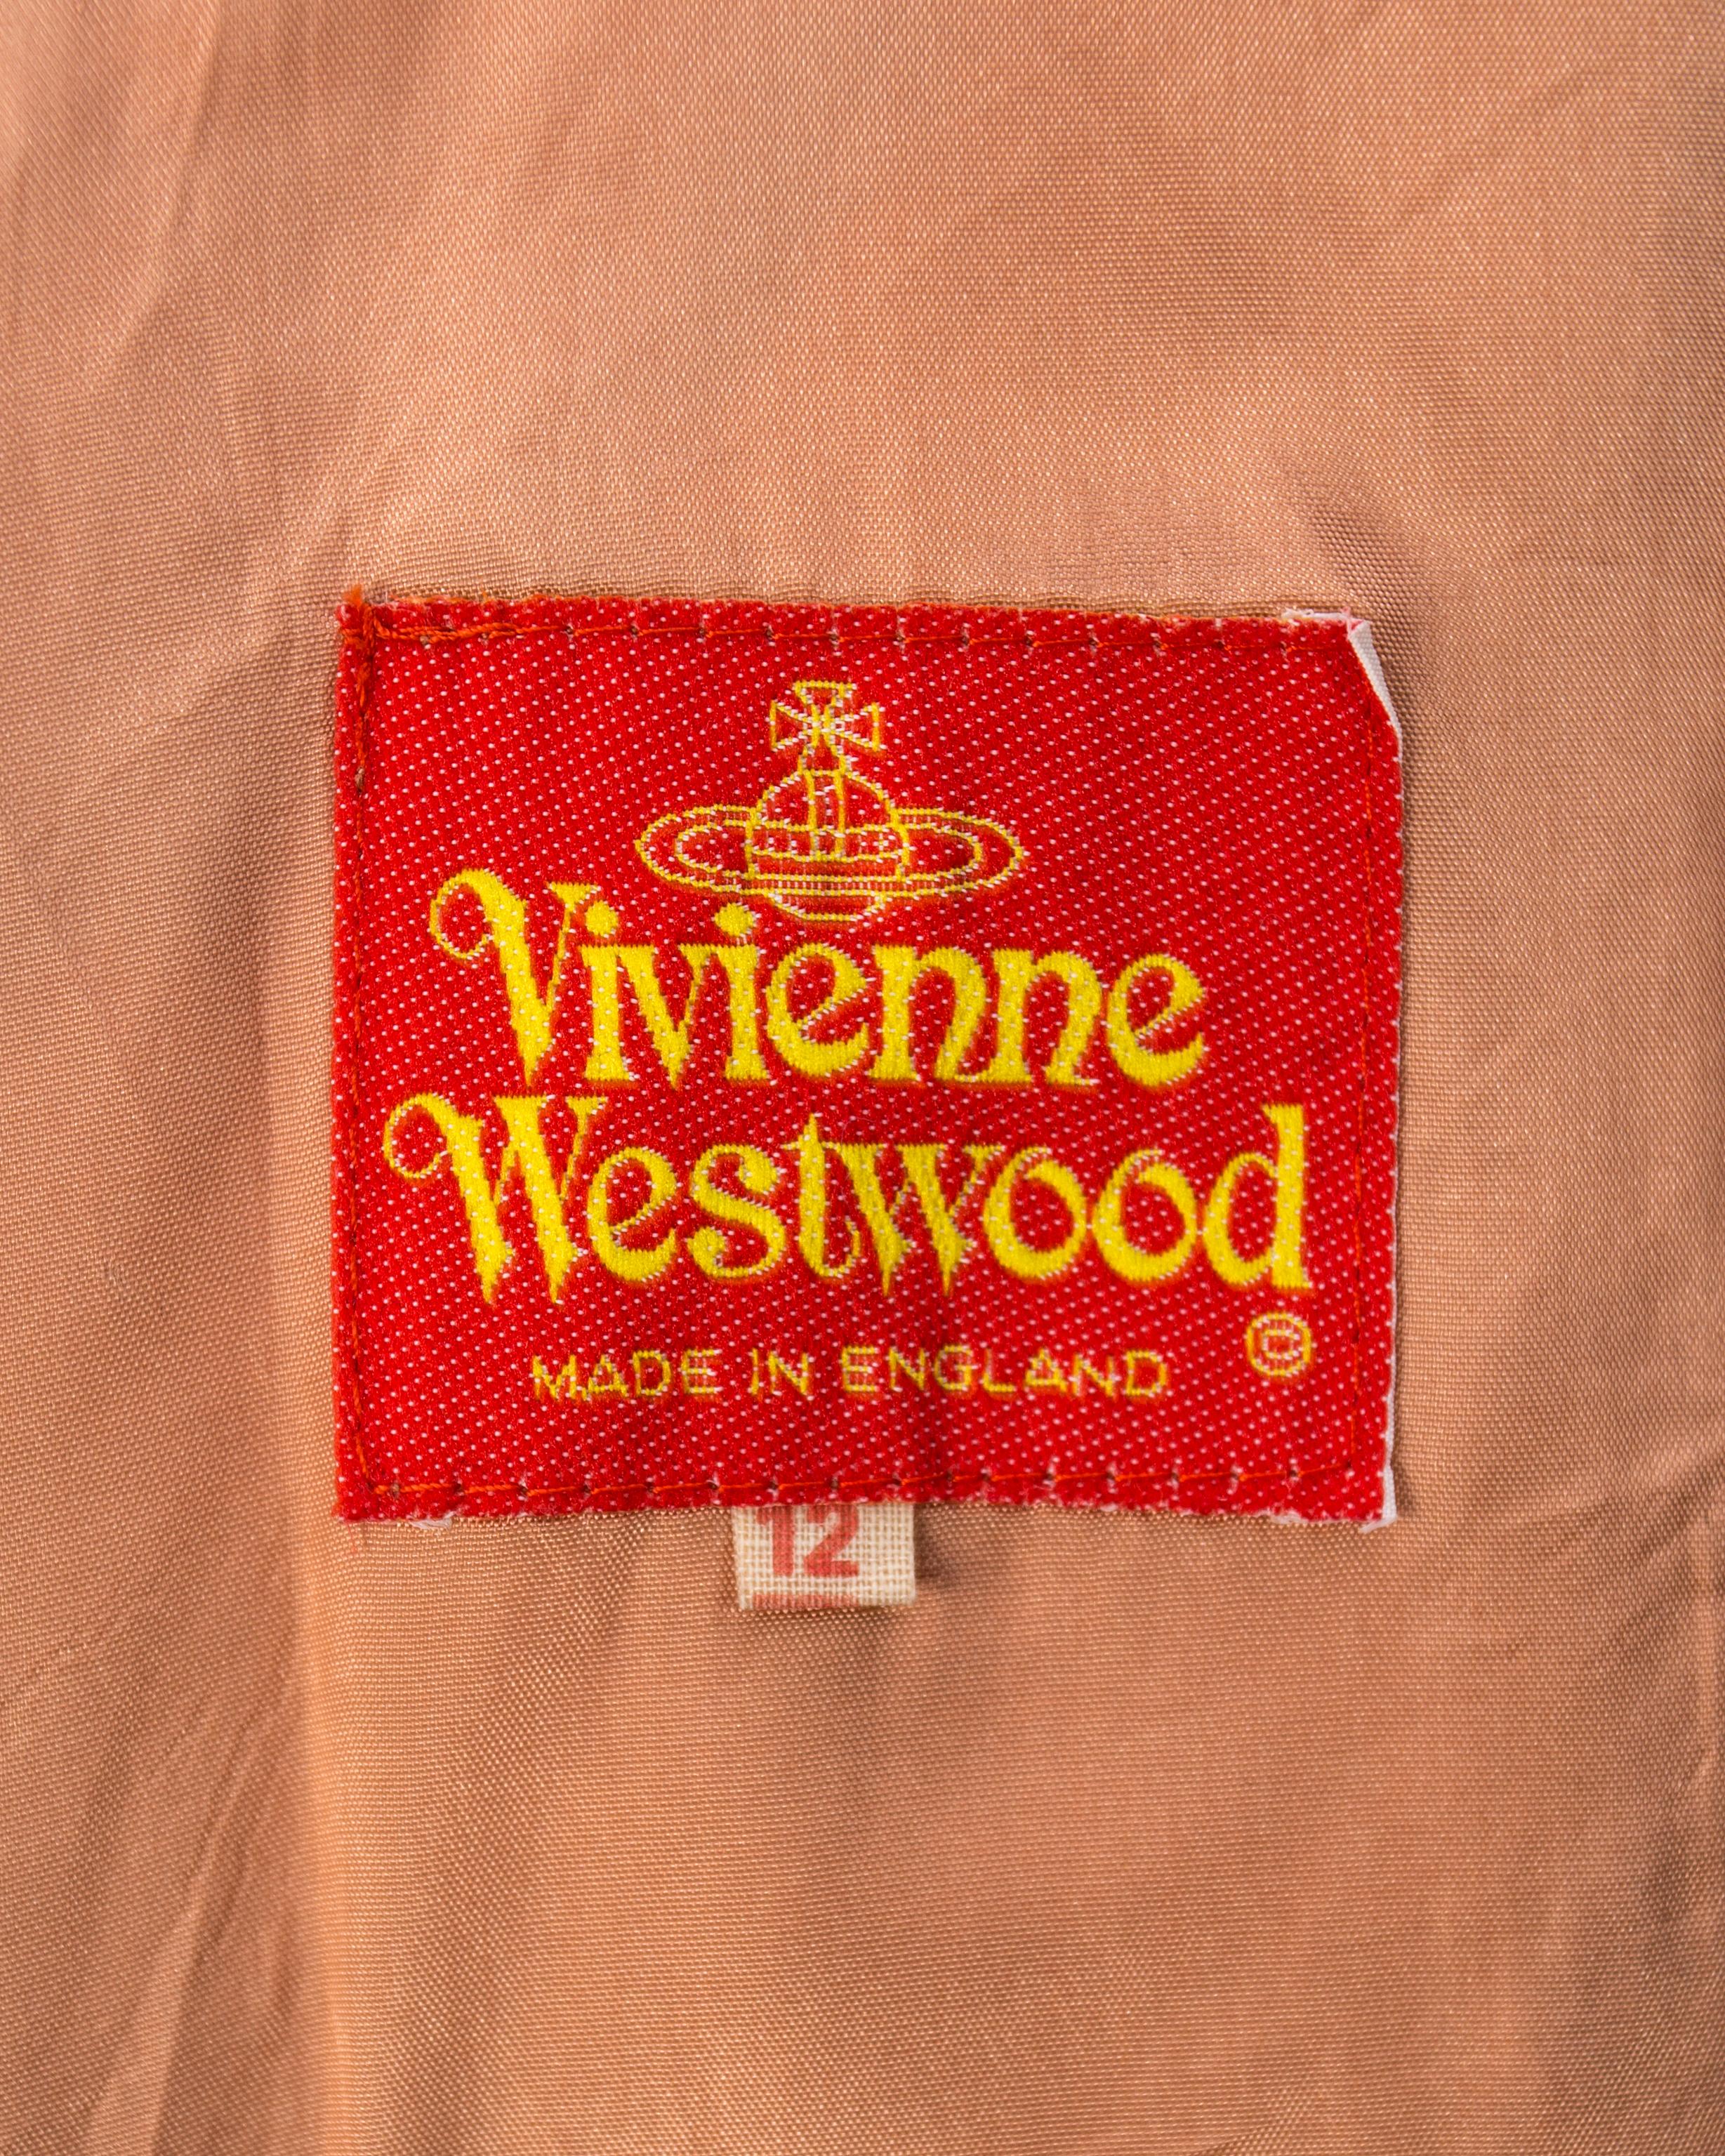 Vivivnne Westwood striped herringbone tweed short suit, fw 1990 For Sale 4